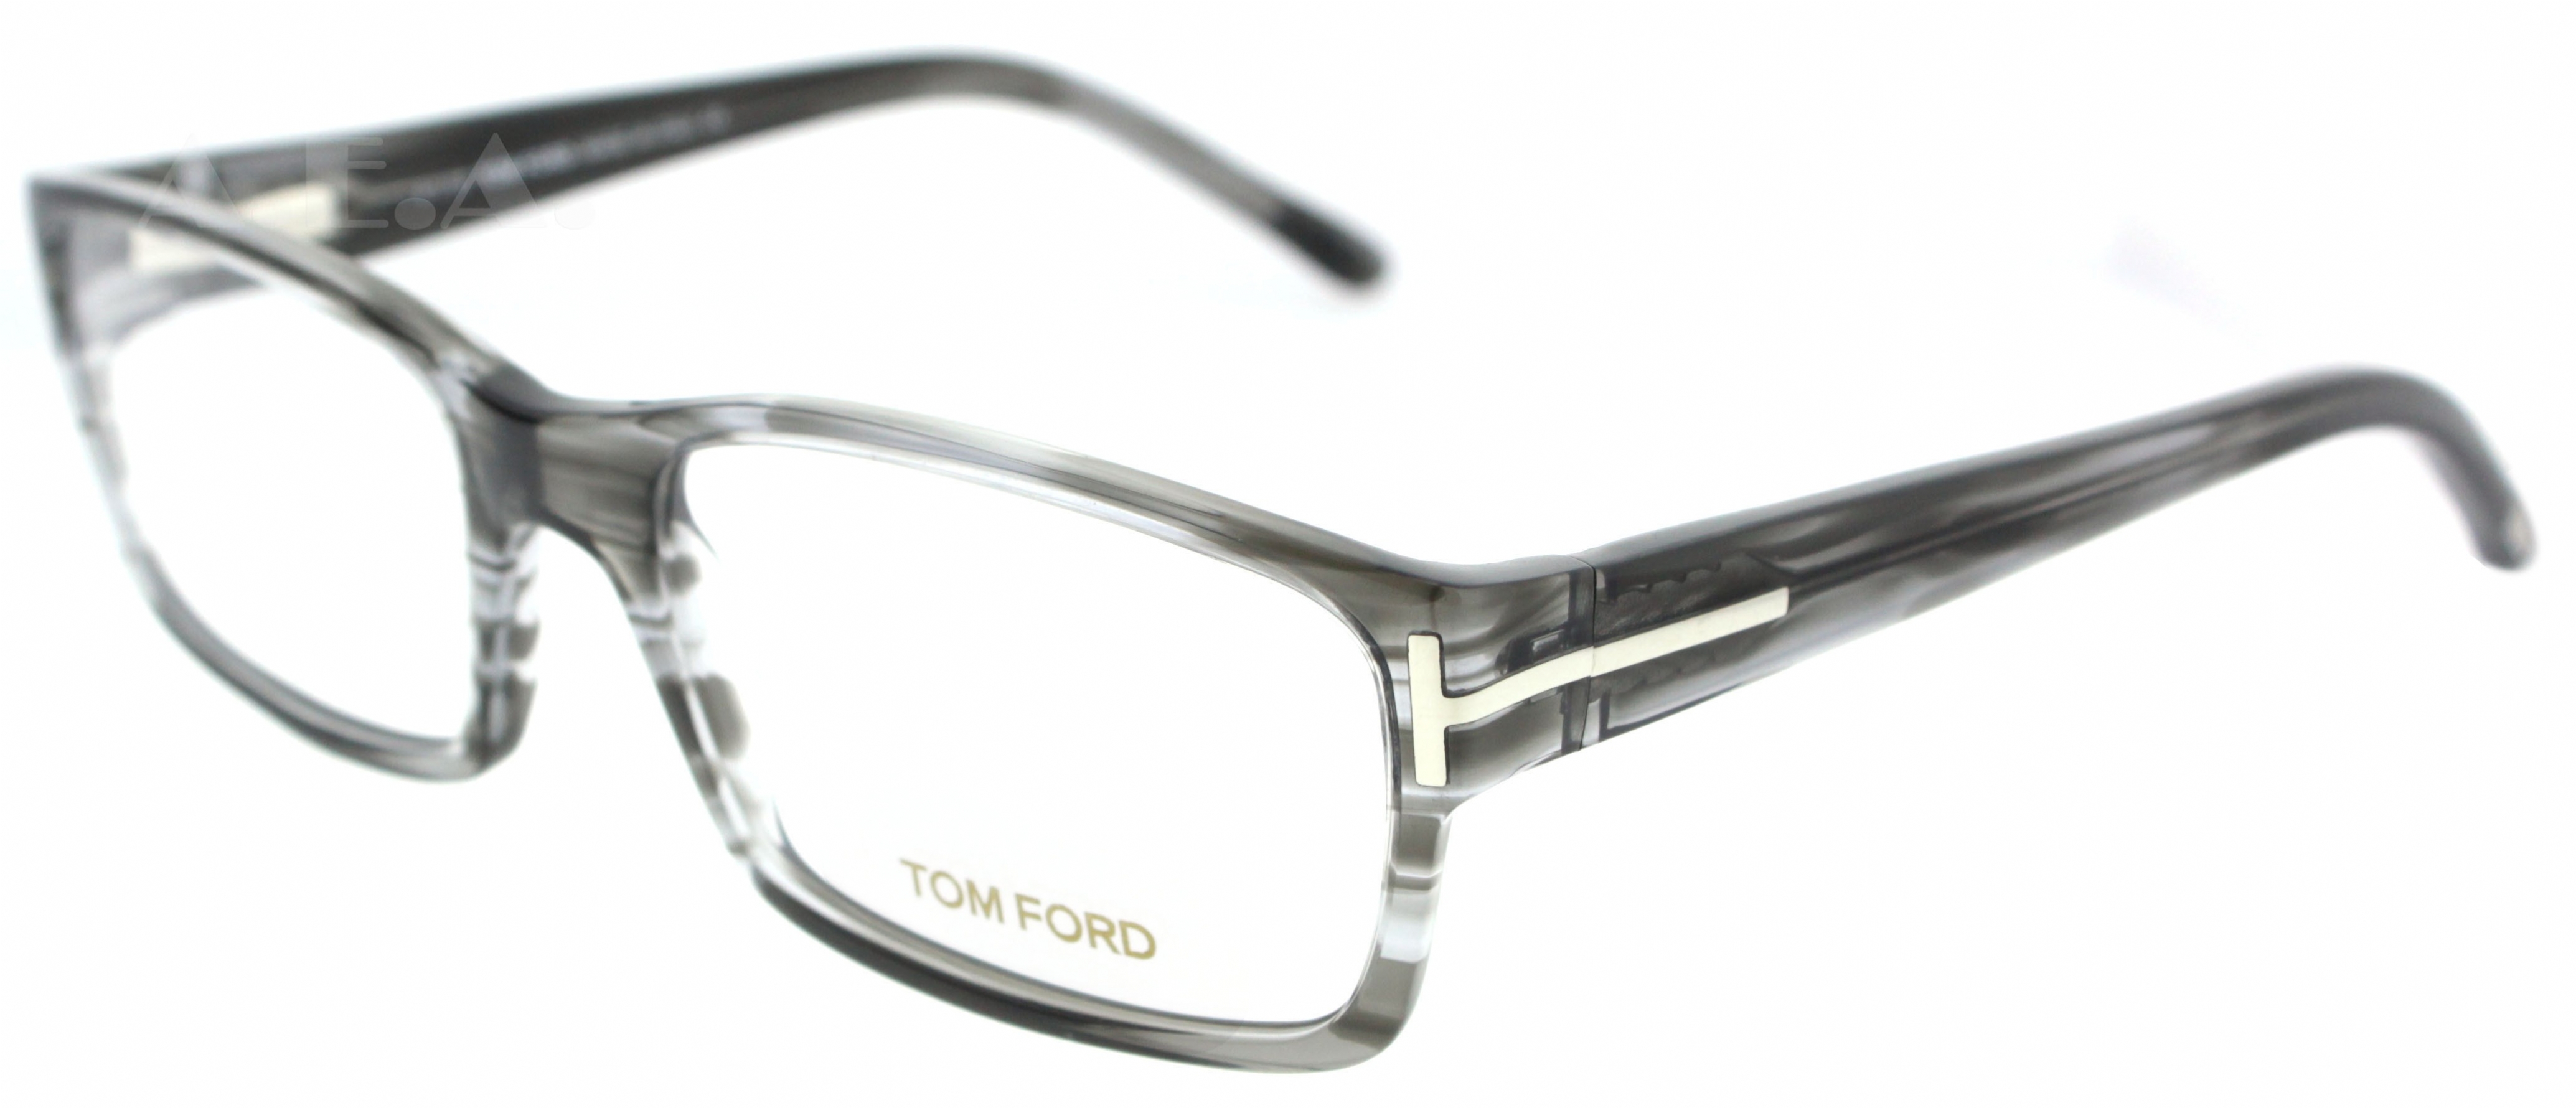 TOM FORD 5013